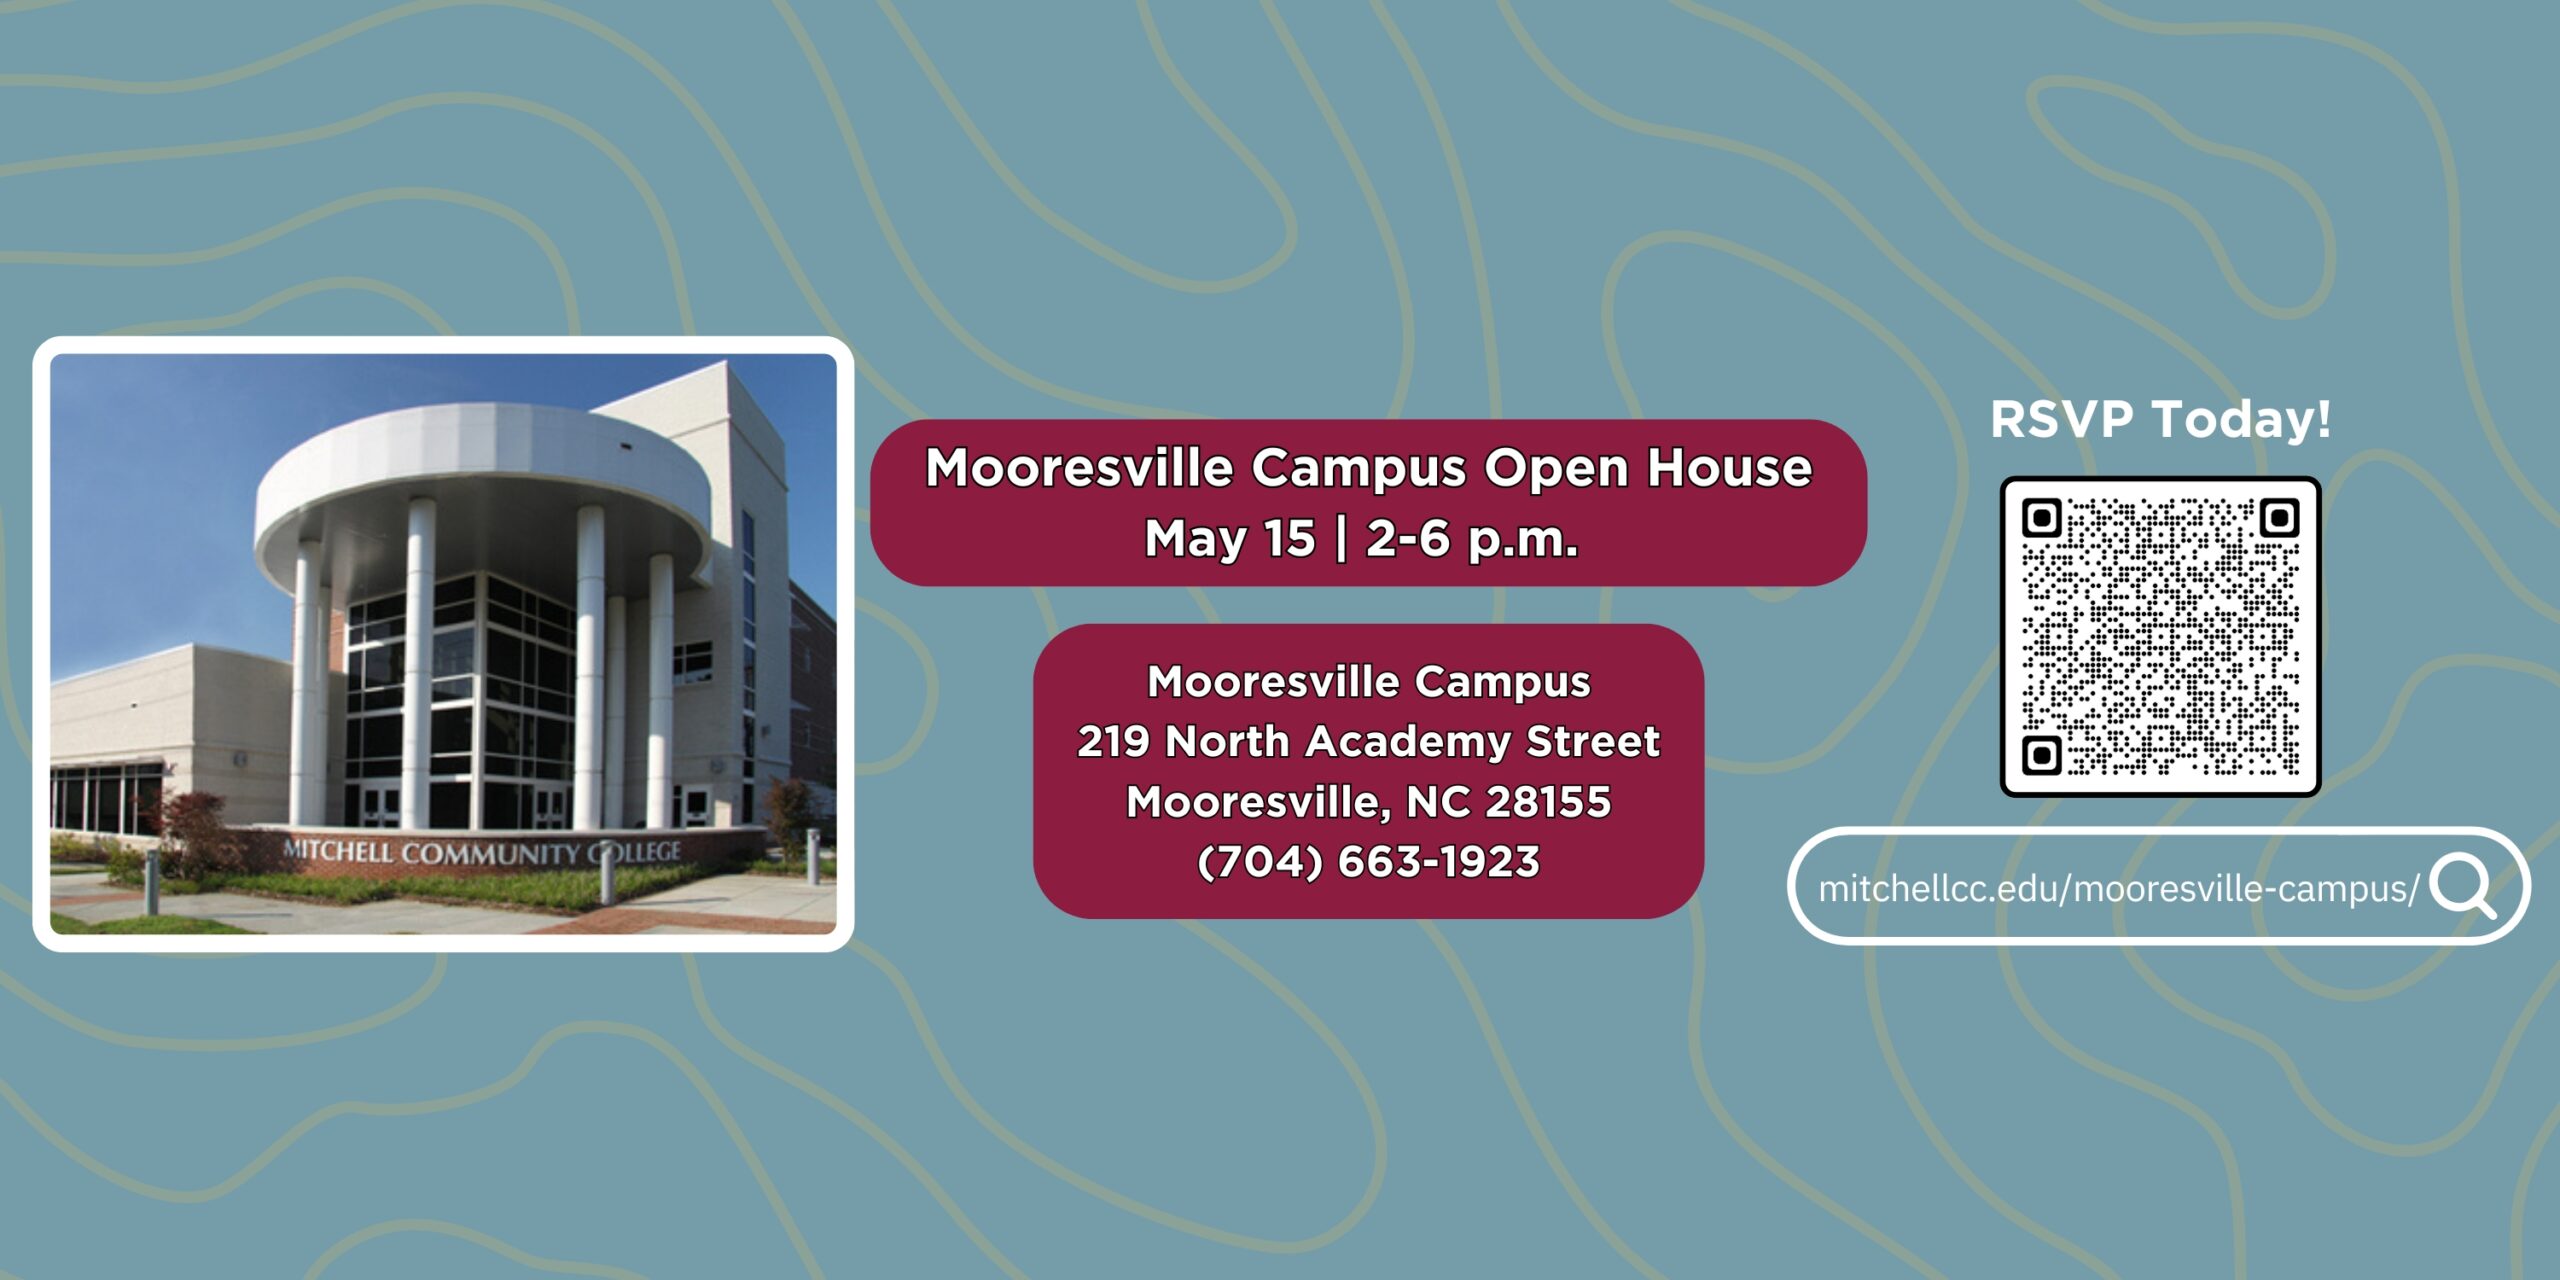 Banner ki di "Mooresville Campus Open House | 15 me | 2-6 pm | Mooresville Campus 219 North Academy Street - Mooresville, NC 28155 - (704 663-1923". Klike banyè a pou w aprann plis oswa vizite mitchellcc.edu/mooresville-). kanpis/".